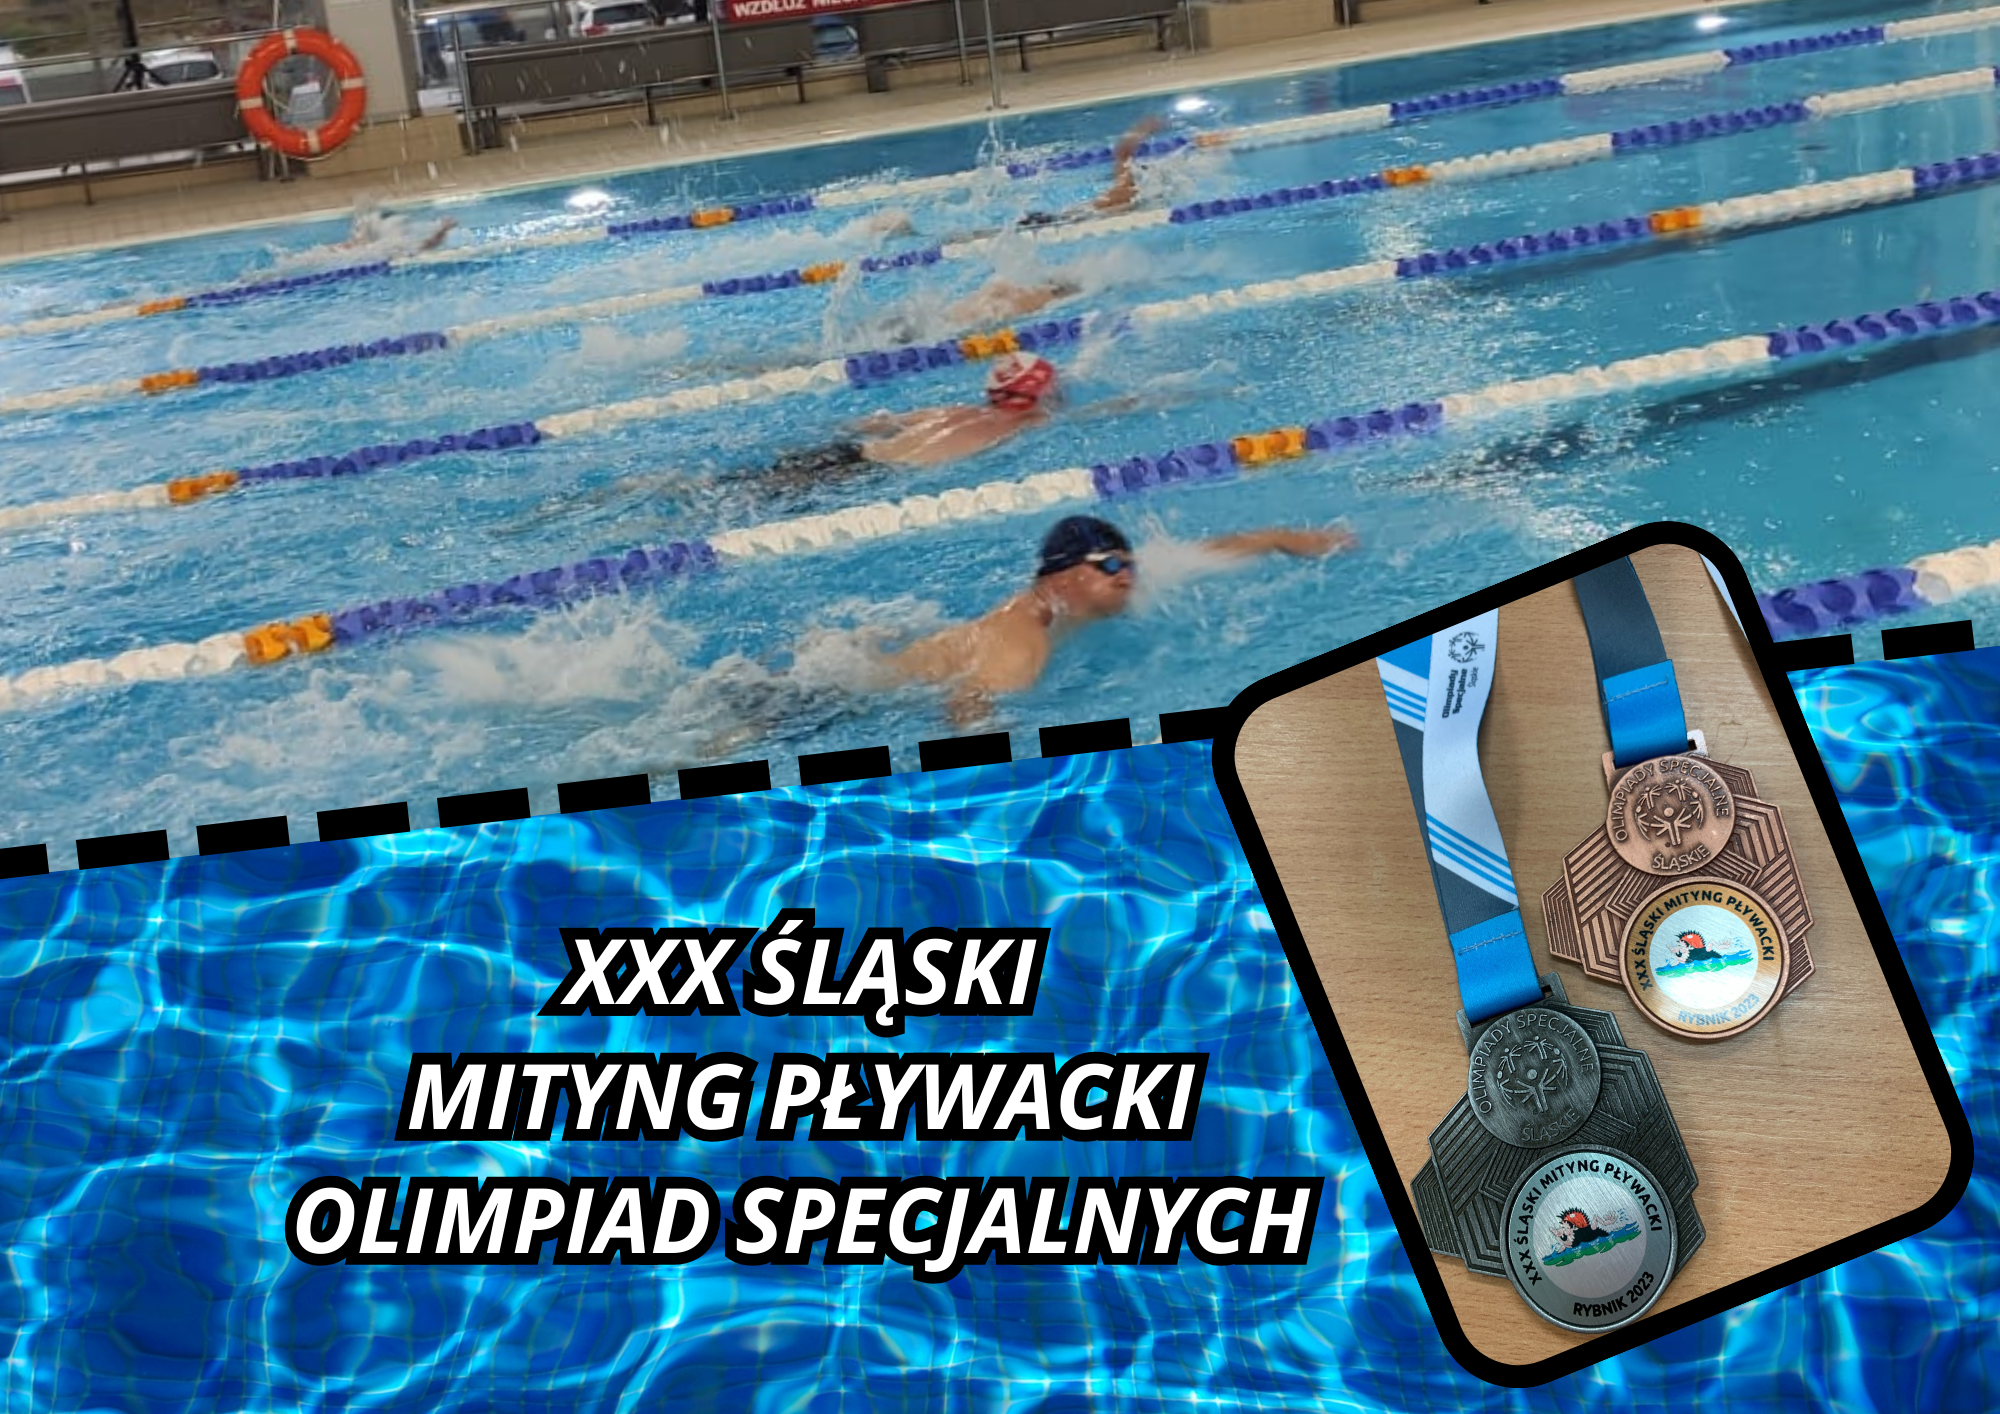 XXX Śląski Mityng Pływacki Olimpiad Specjalnych Rybnik 2023